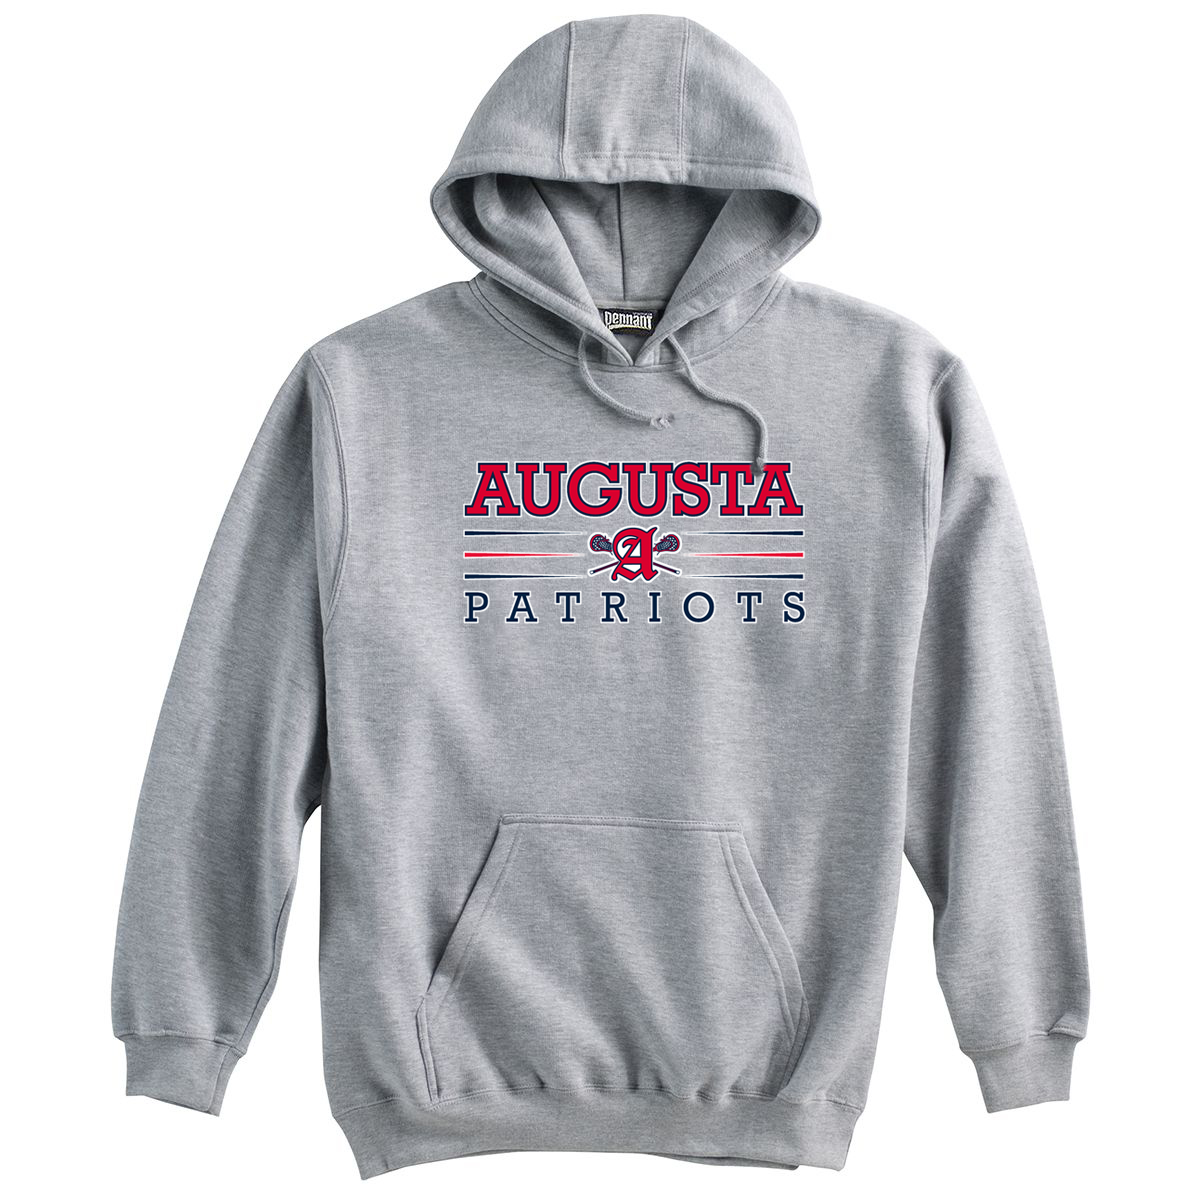 Augusta Patriots Grey Sweatshirt